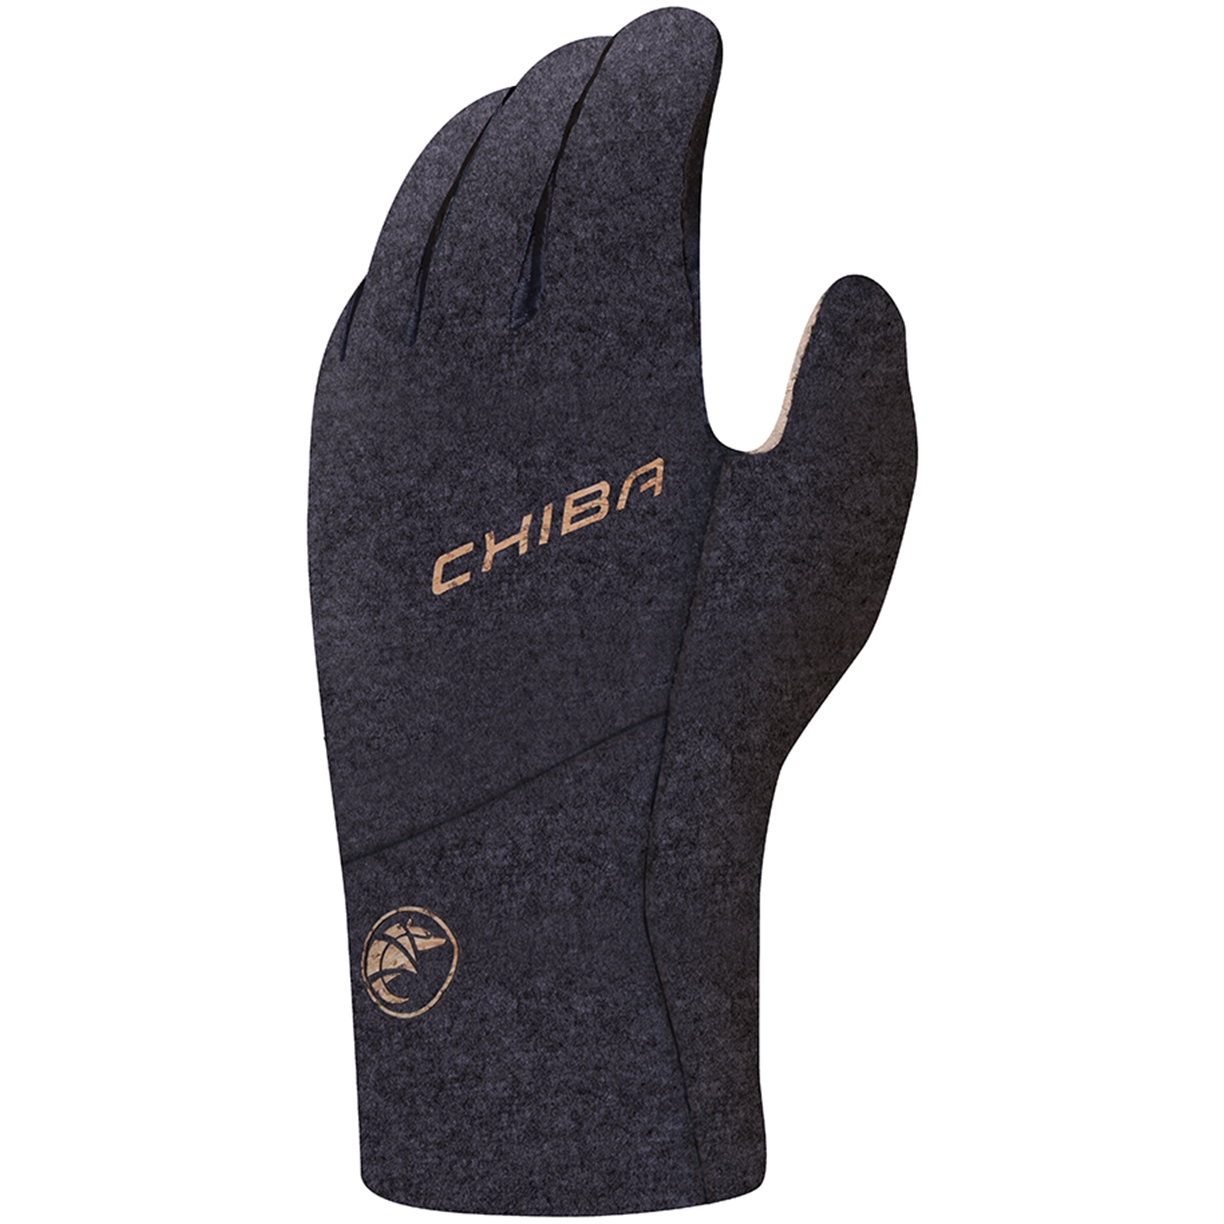 Productfoto van Chiba All Natural Warm Waterproof Fietshandschoenen - zwart